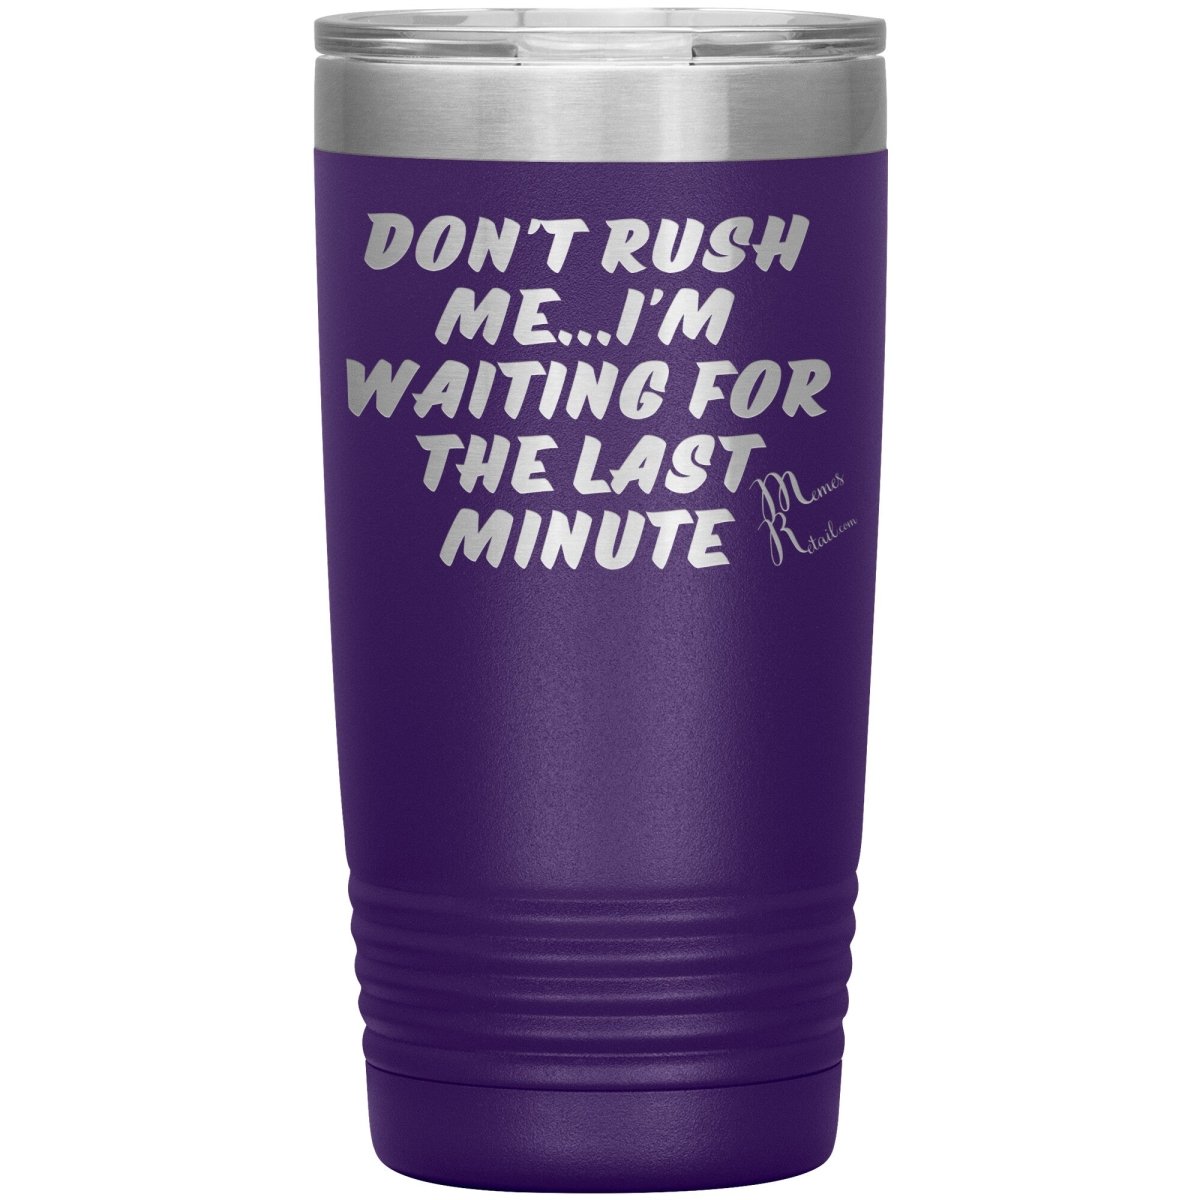 Don't Rush Me... I'm Waiting For The Last Minute Tumbers, 20oz Insulated Tumbler / Purple - MemesRetail.com